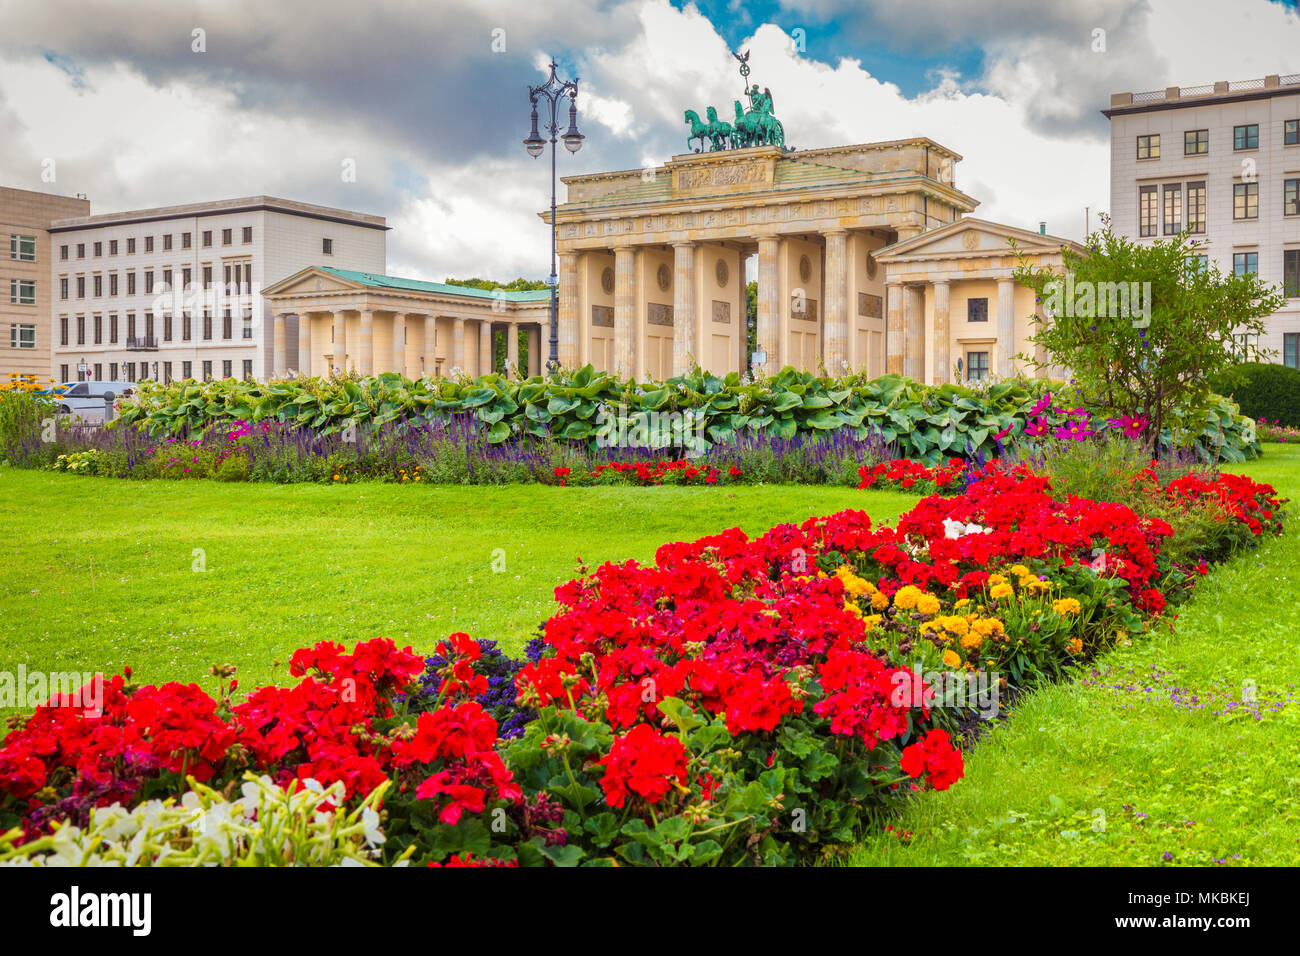 Visualizzazione classica della famosa Porta di Brandeburgo a Pariser Platz, uno dei più noti monumenti e simboli nazionali della Germania, in una bella giornata di sole in Foto Stock